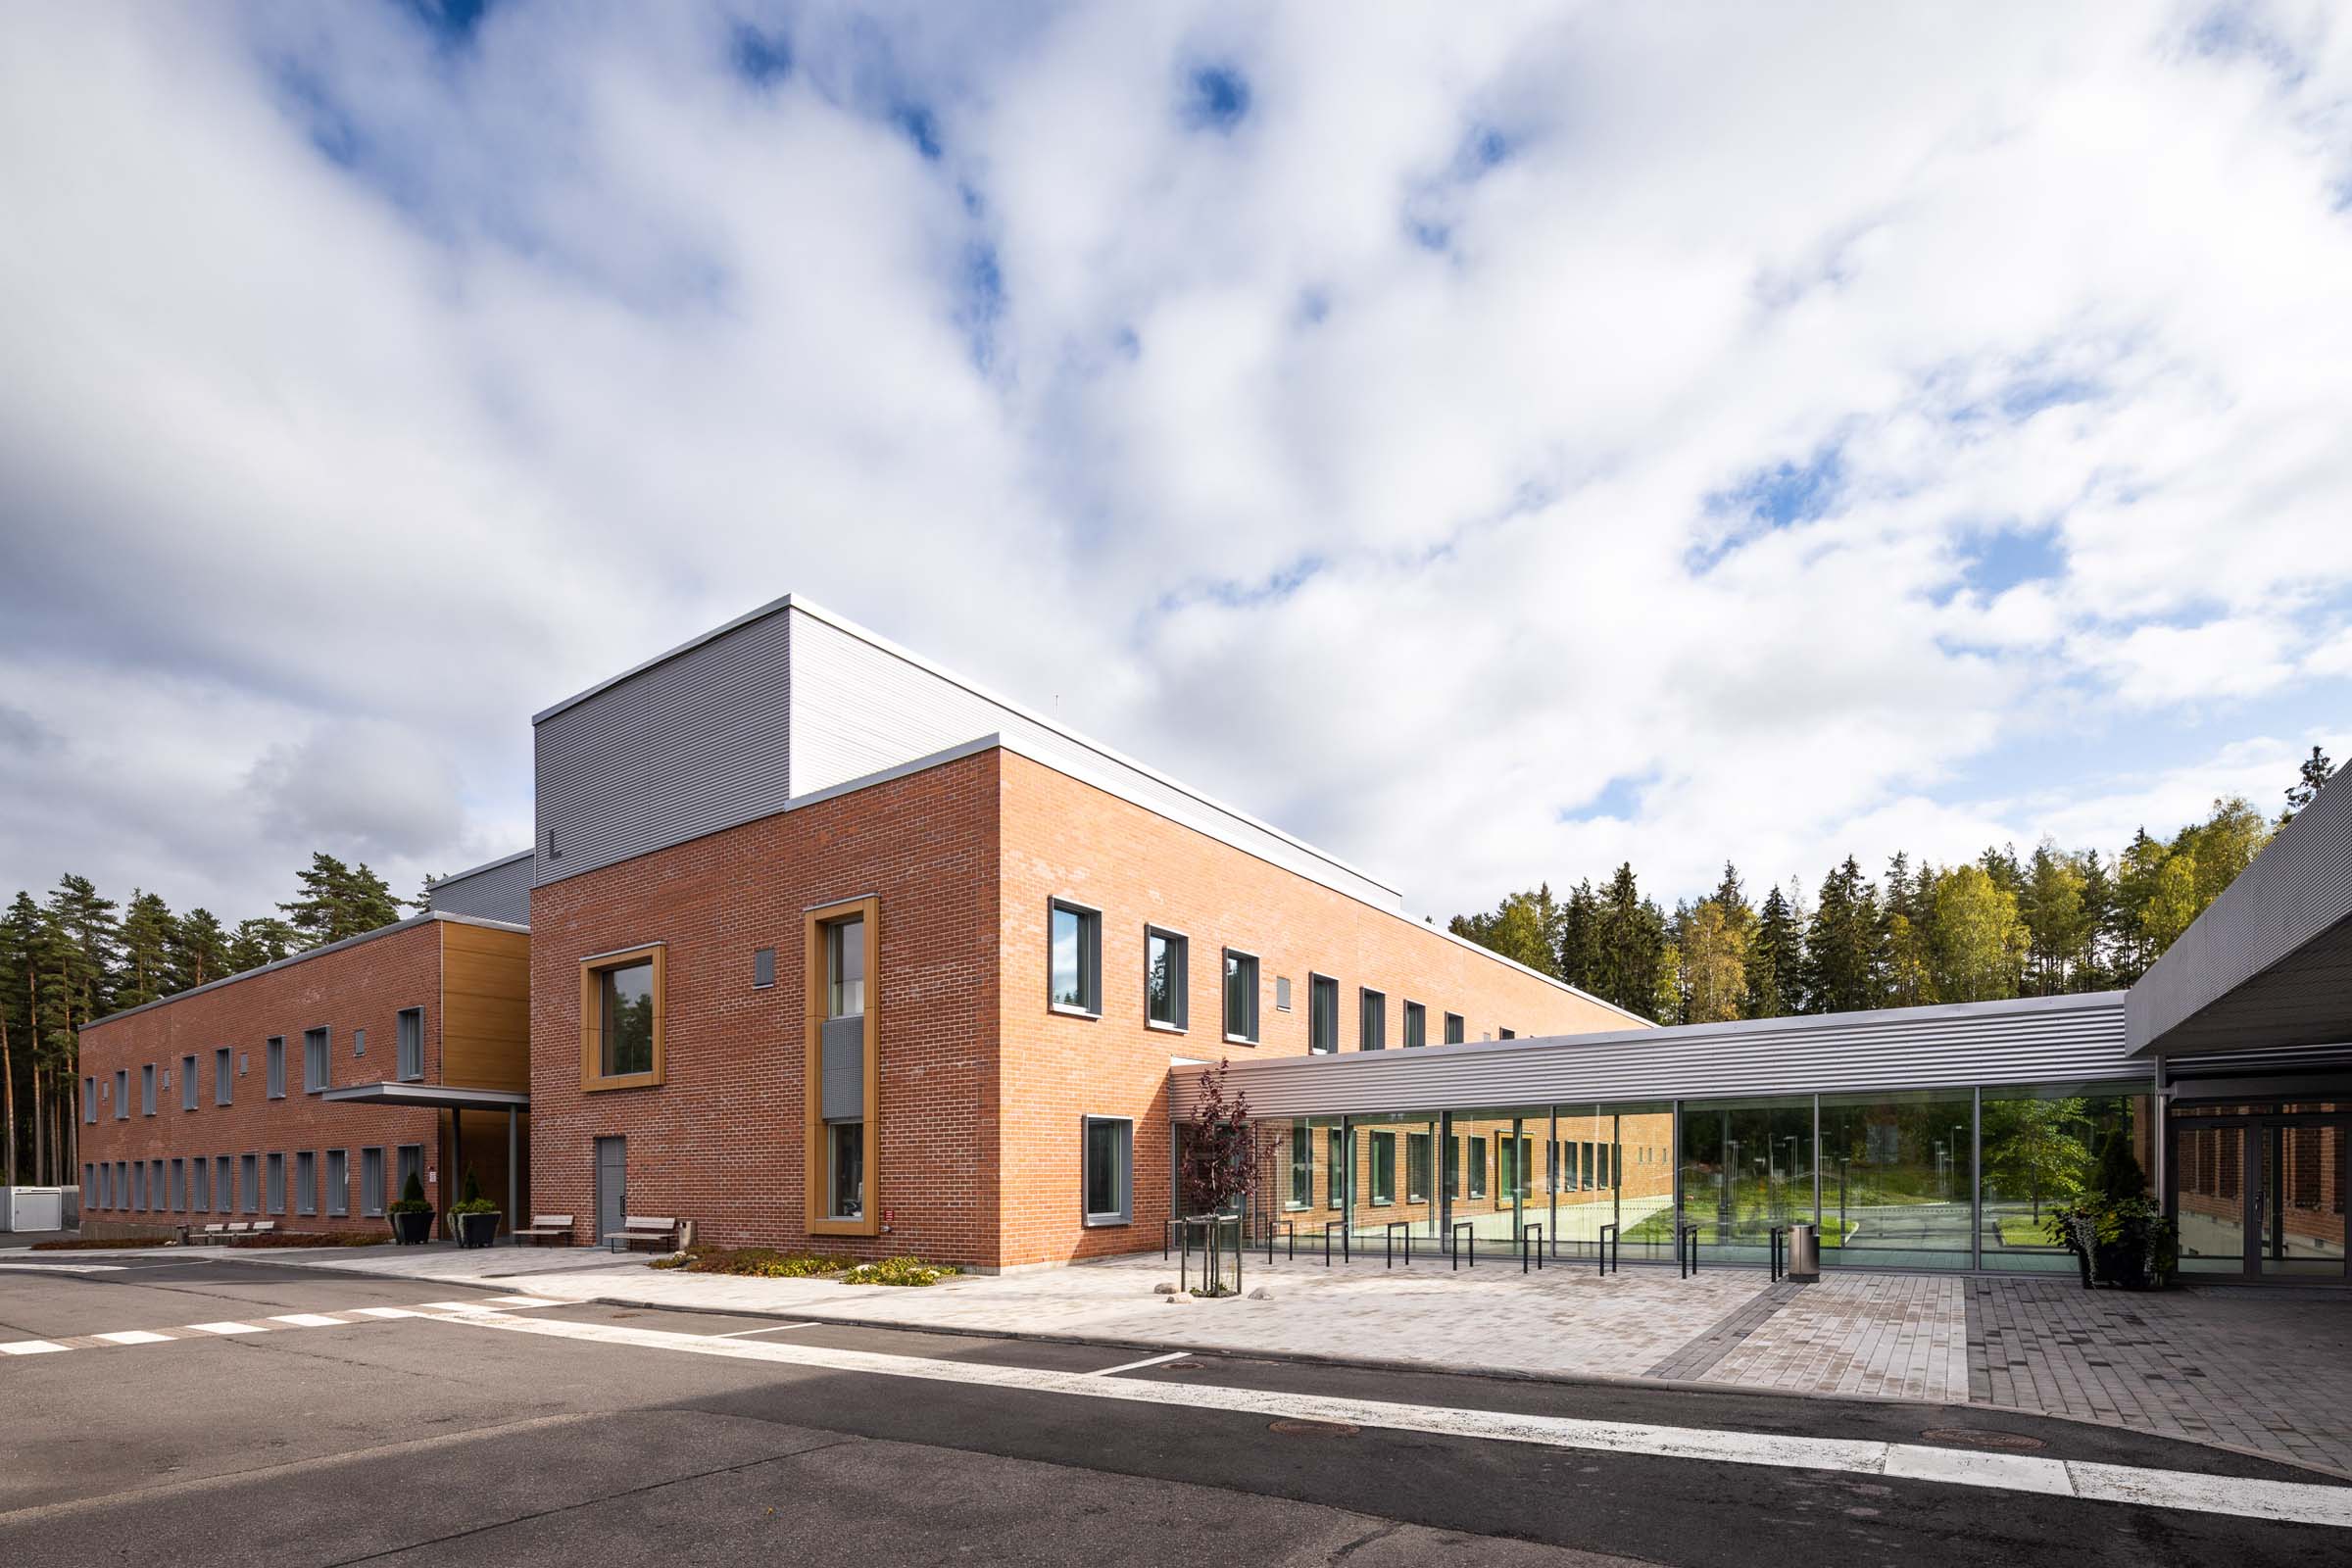 HUS, Lohjan sairaalan psykiatrian uudisrakennus, julkisivu ja pääsisäänkäynti.